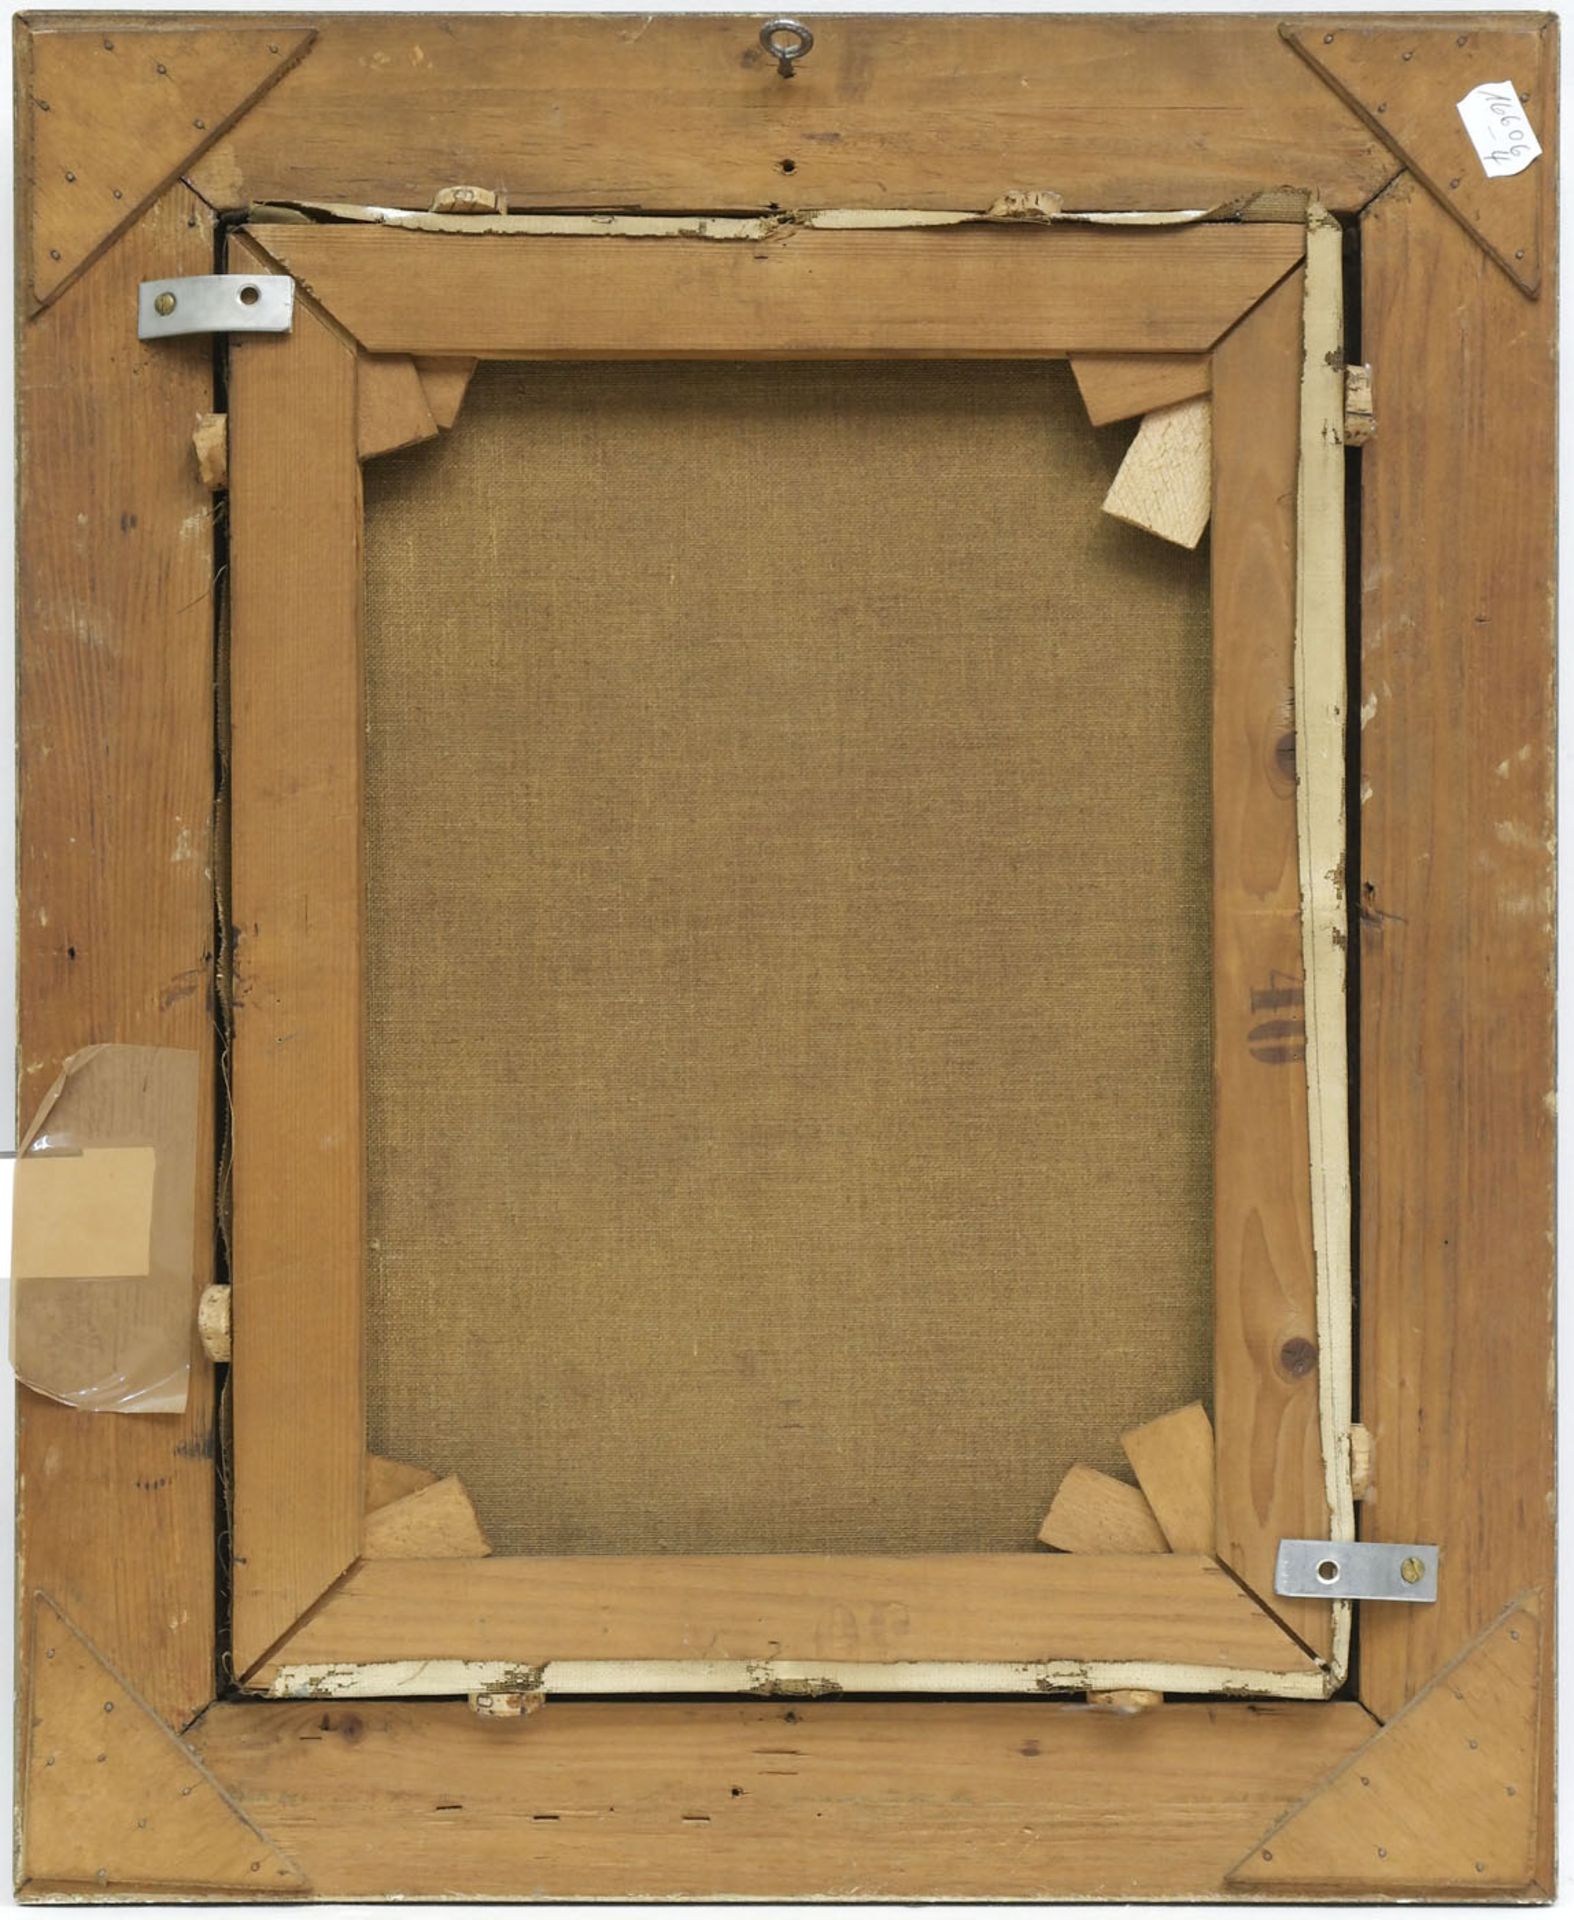 Maler Ende 19. Jh. "Beduine", Öl/Lw., undeutl. sign. u.r., 41x31 cm - Bild 3 aus 3